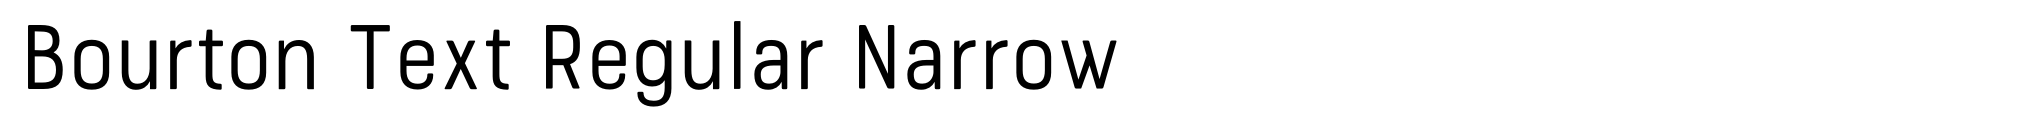 Bourton Text Regular Narrow image